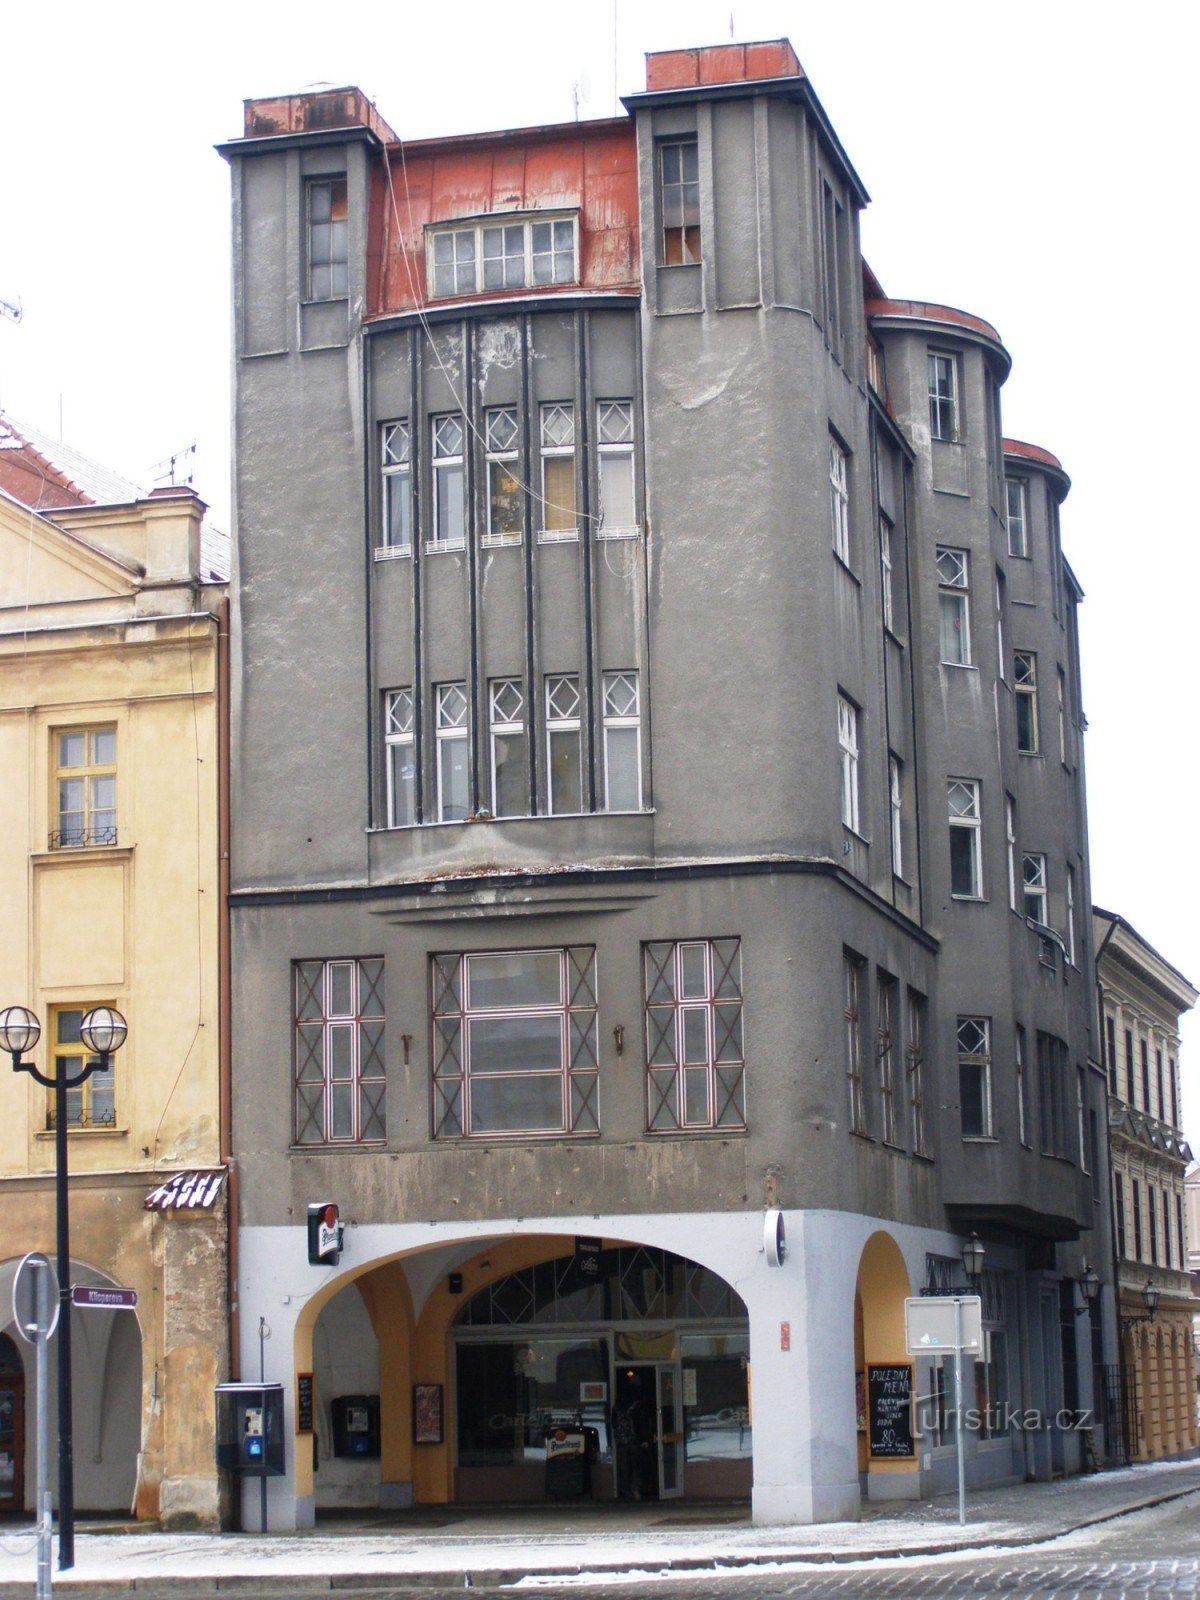 Hradec Králové - ex grande magazzino Špalk